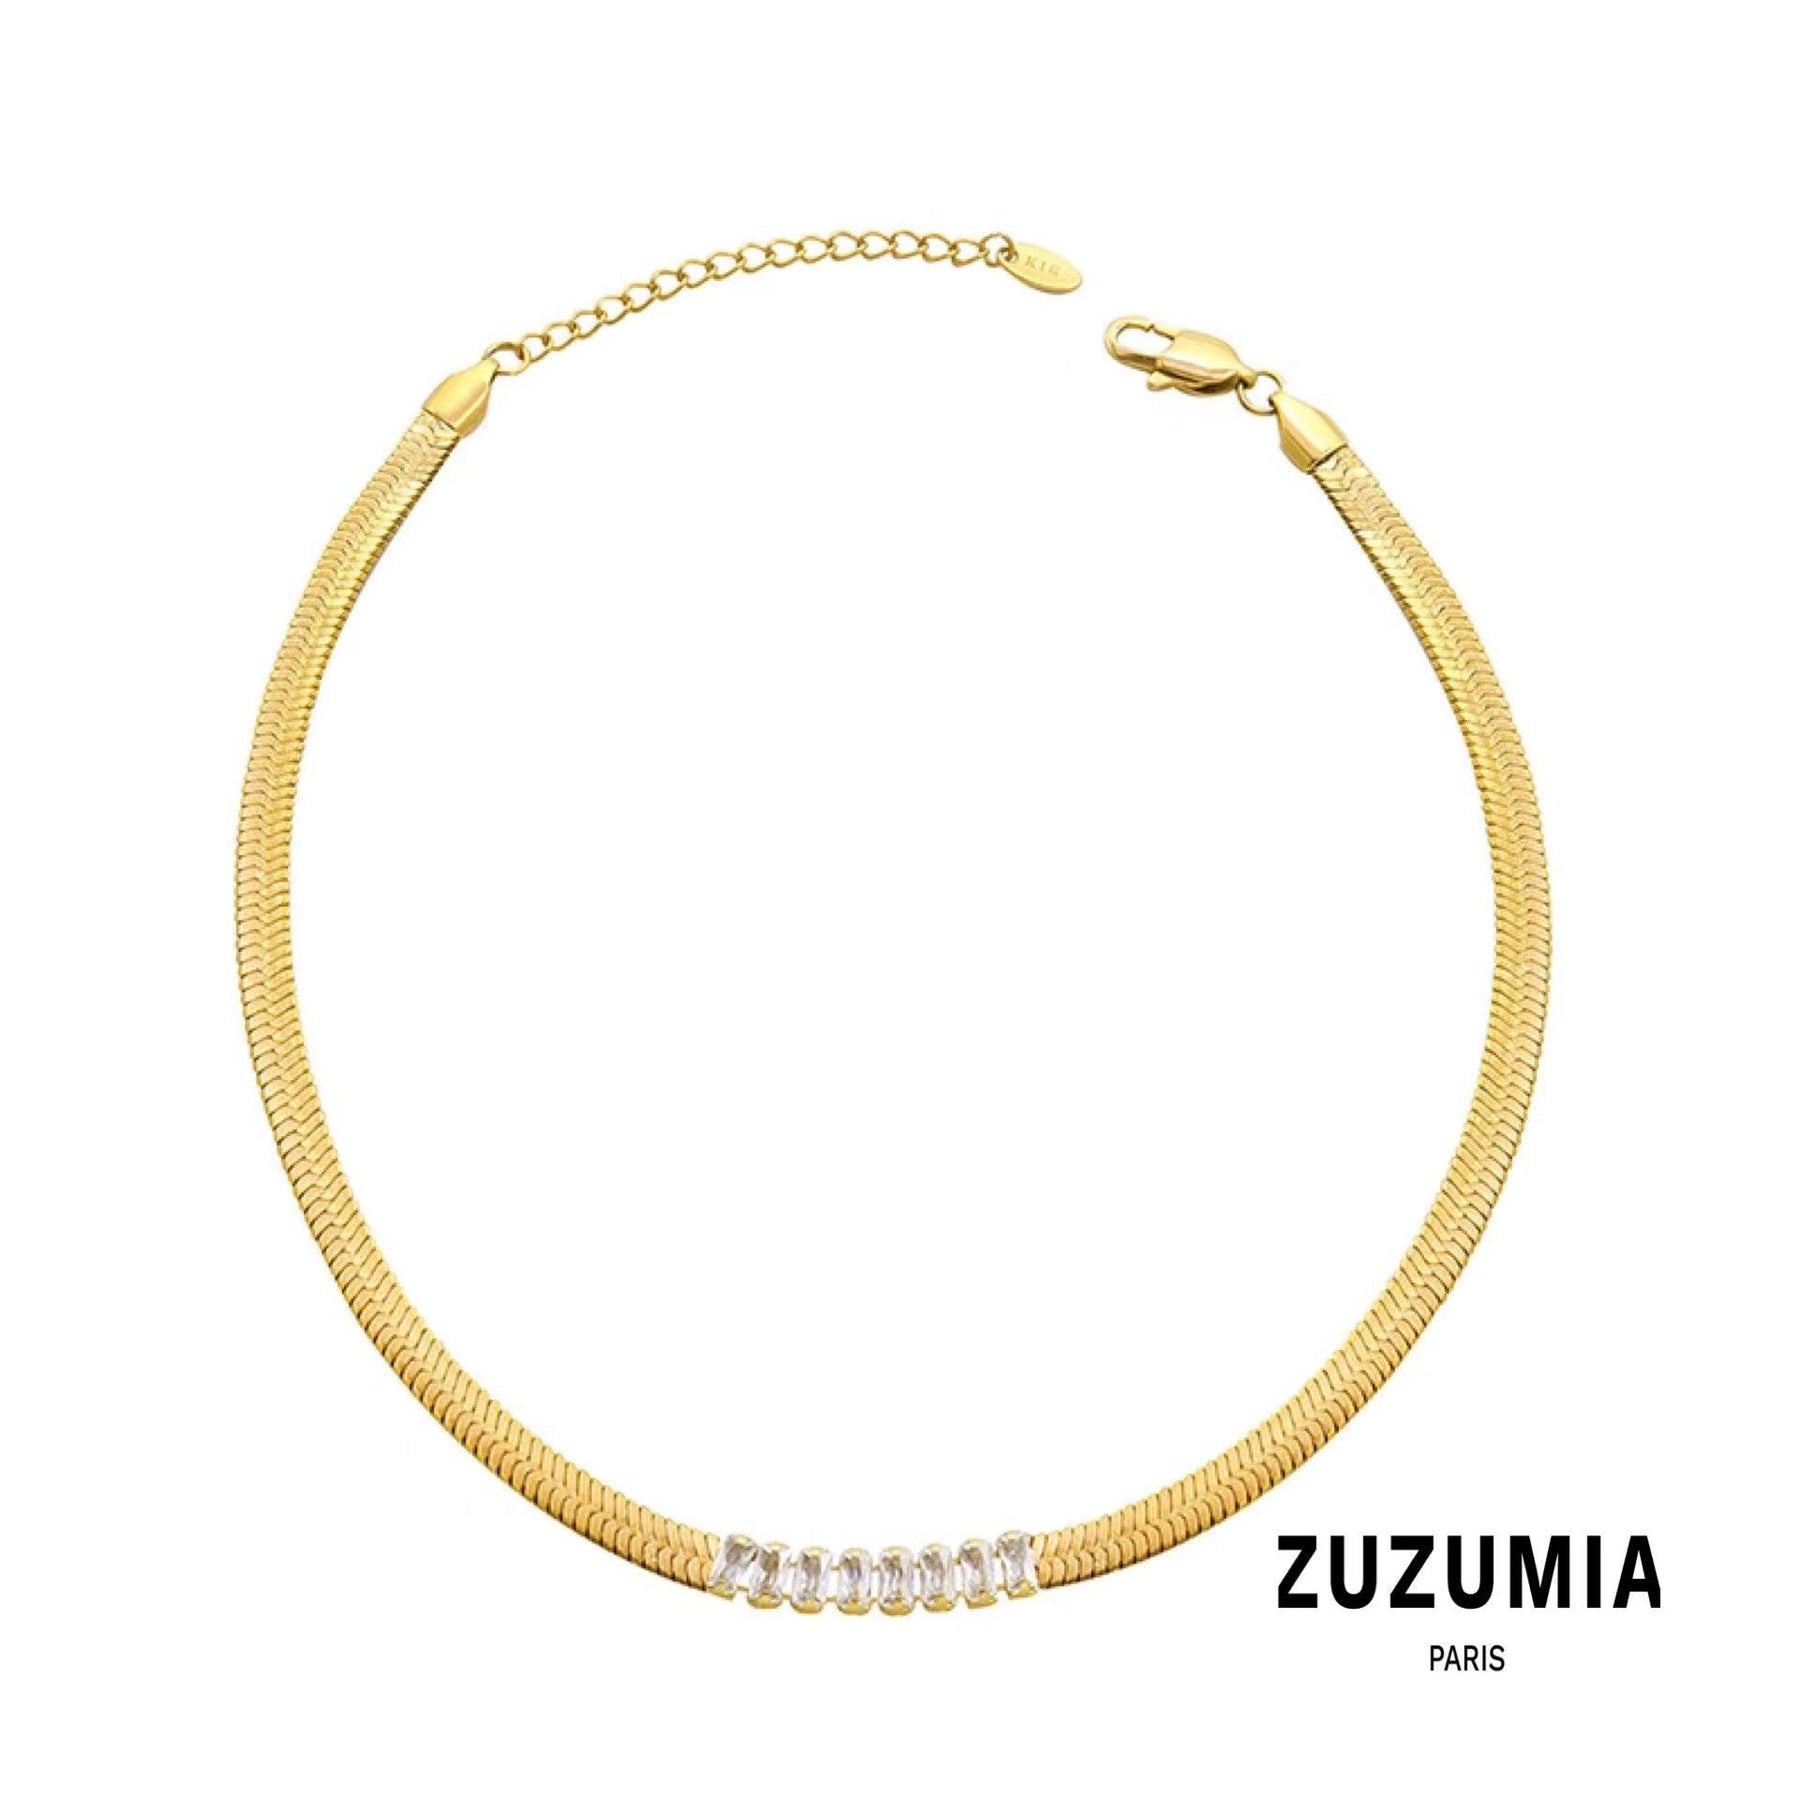 Zircon Choker Necklace Bracelet Set